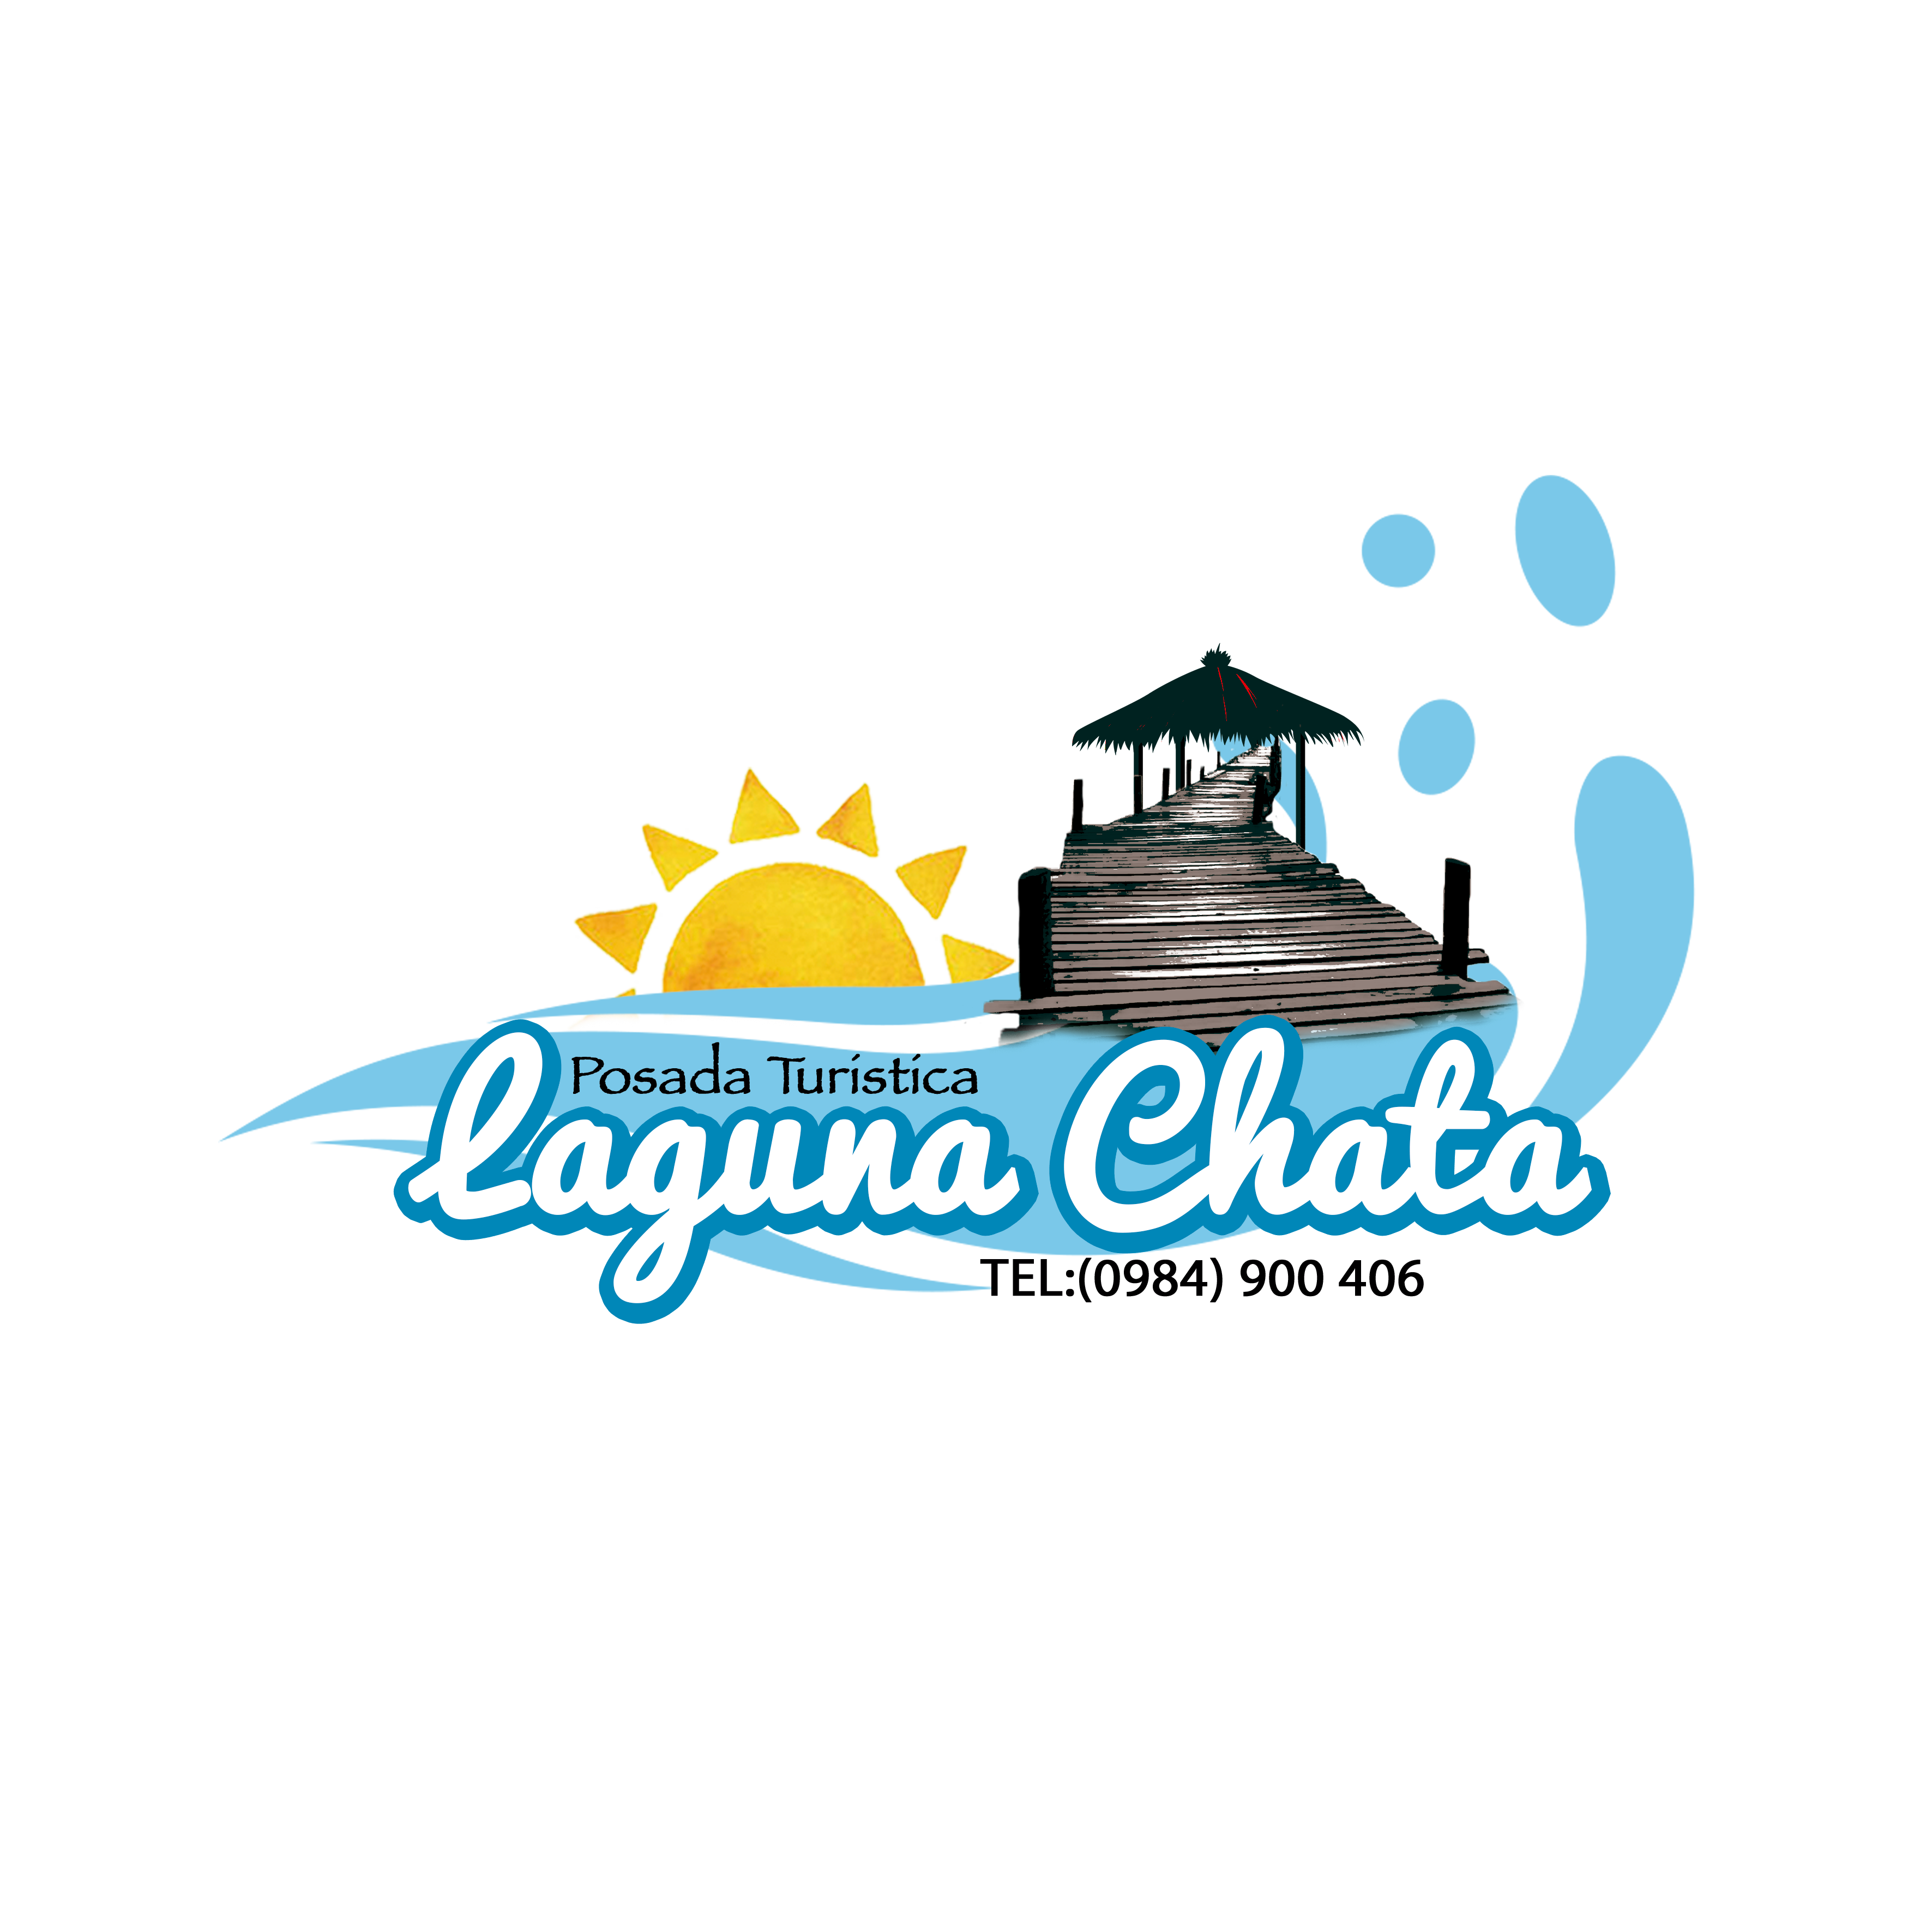 Posada Laguna Chata